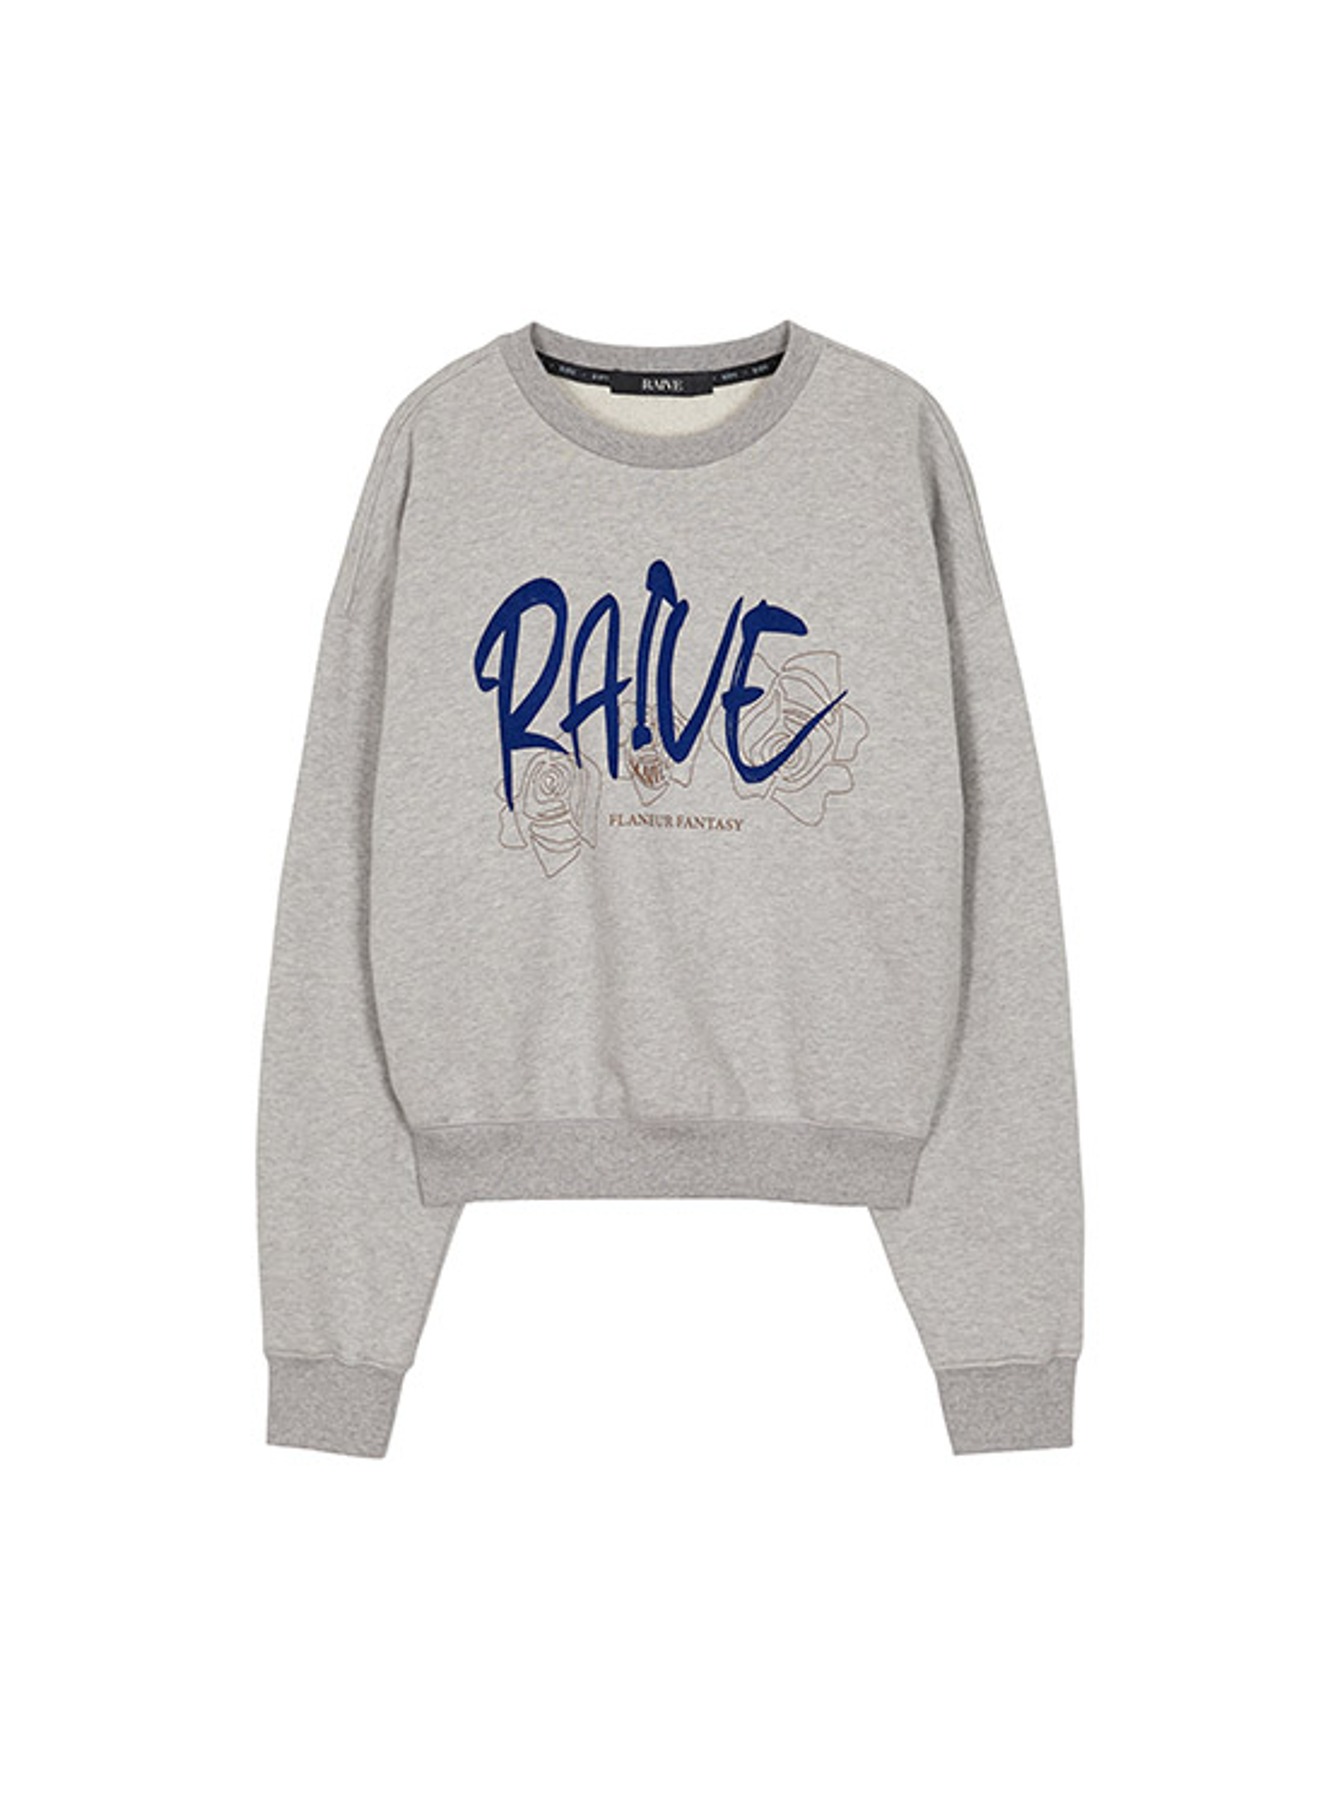 RAIVE Rose Printed Sweatshirt in Grey VW2AE330-12